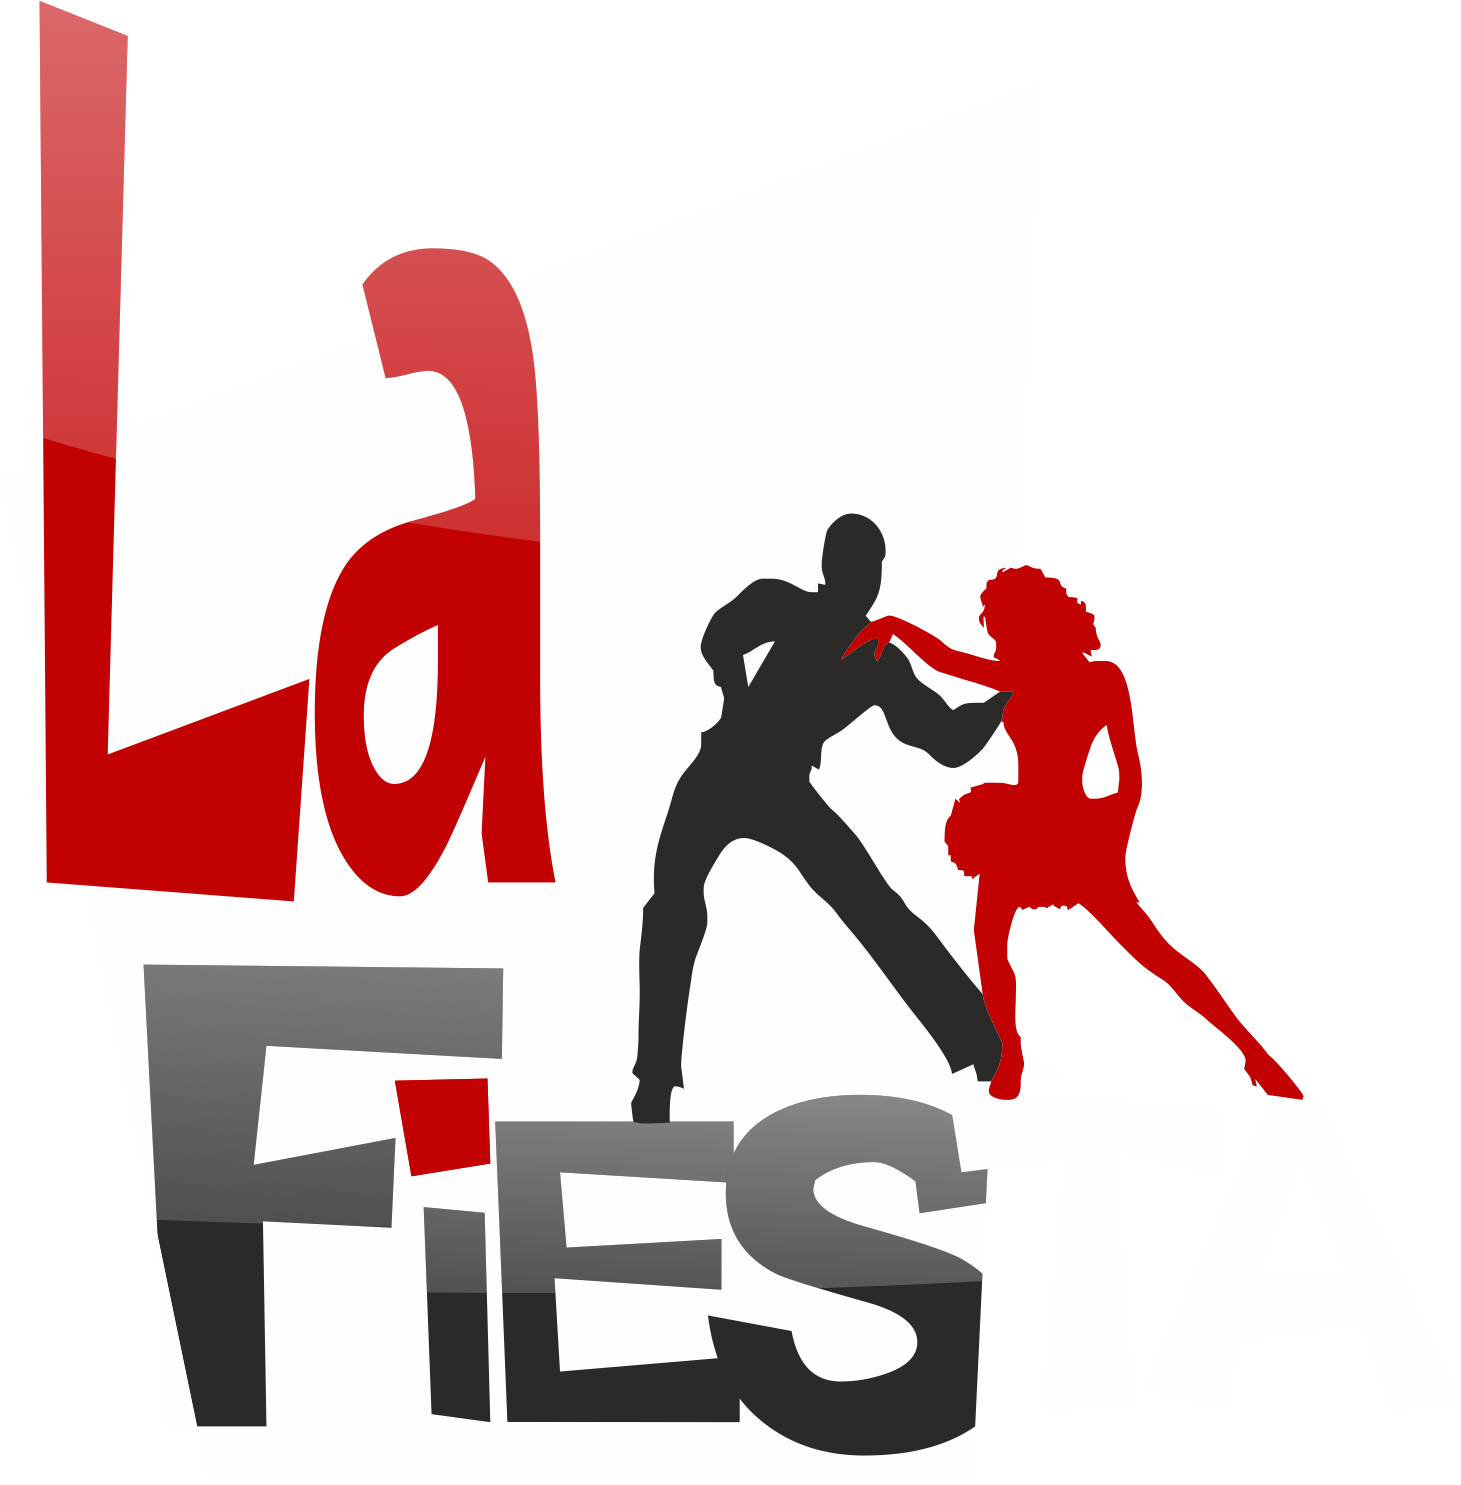 Studio tańca La Fiesta